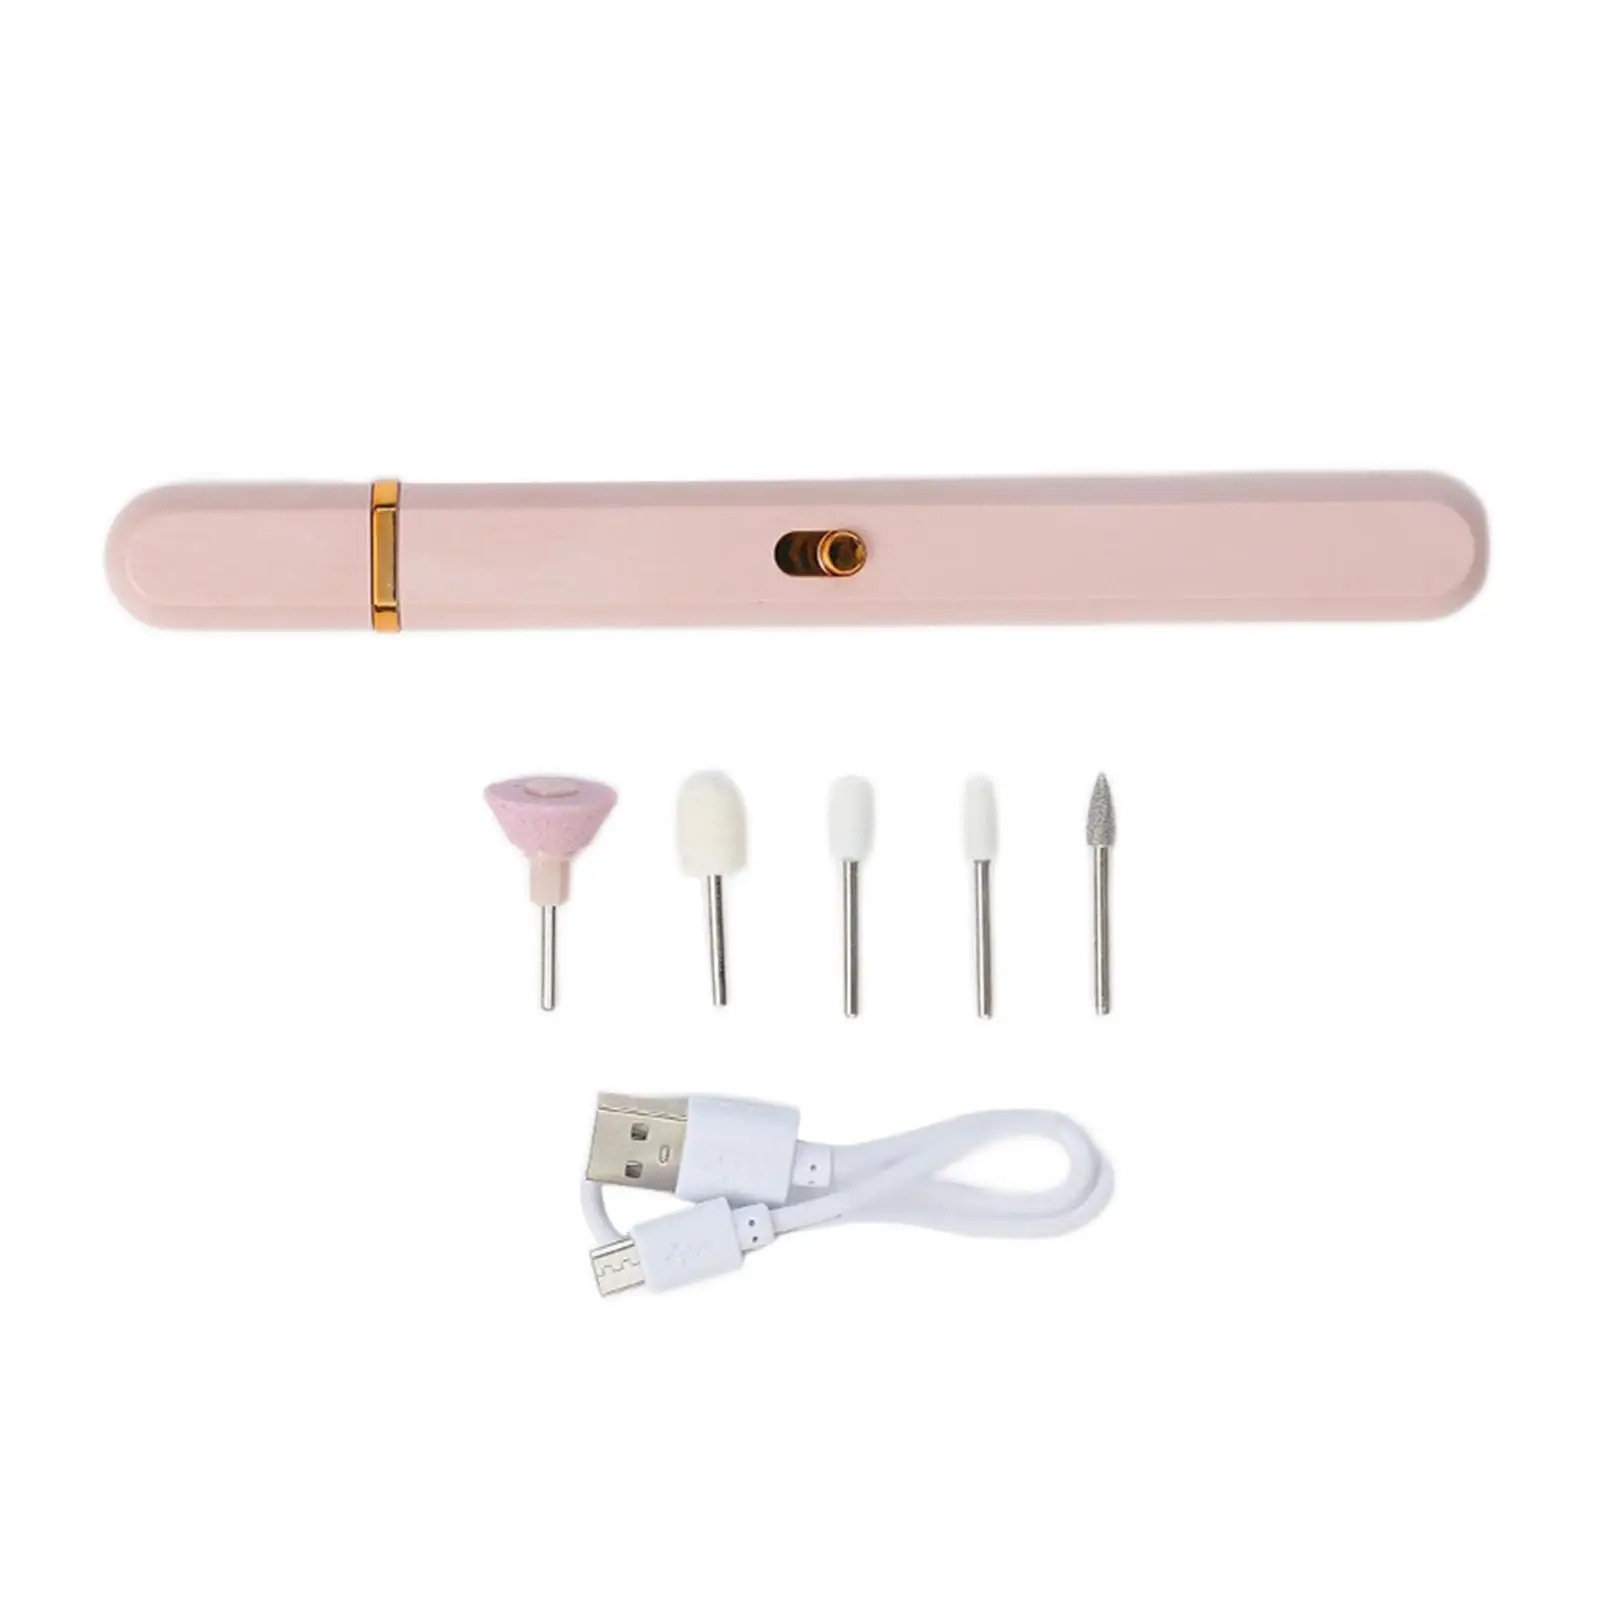 Portable Nail Drill Set Nail Grinder Grooming Kit Acrylic Nails Gel Polishing for Home Salon